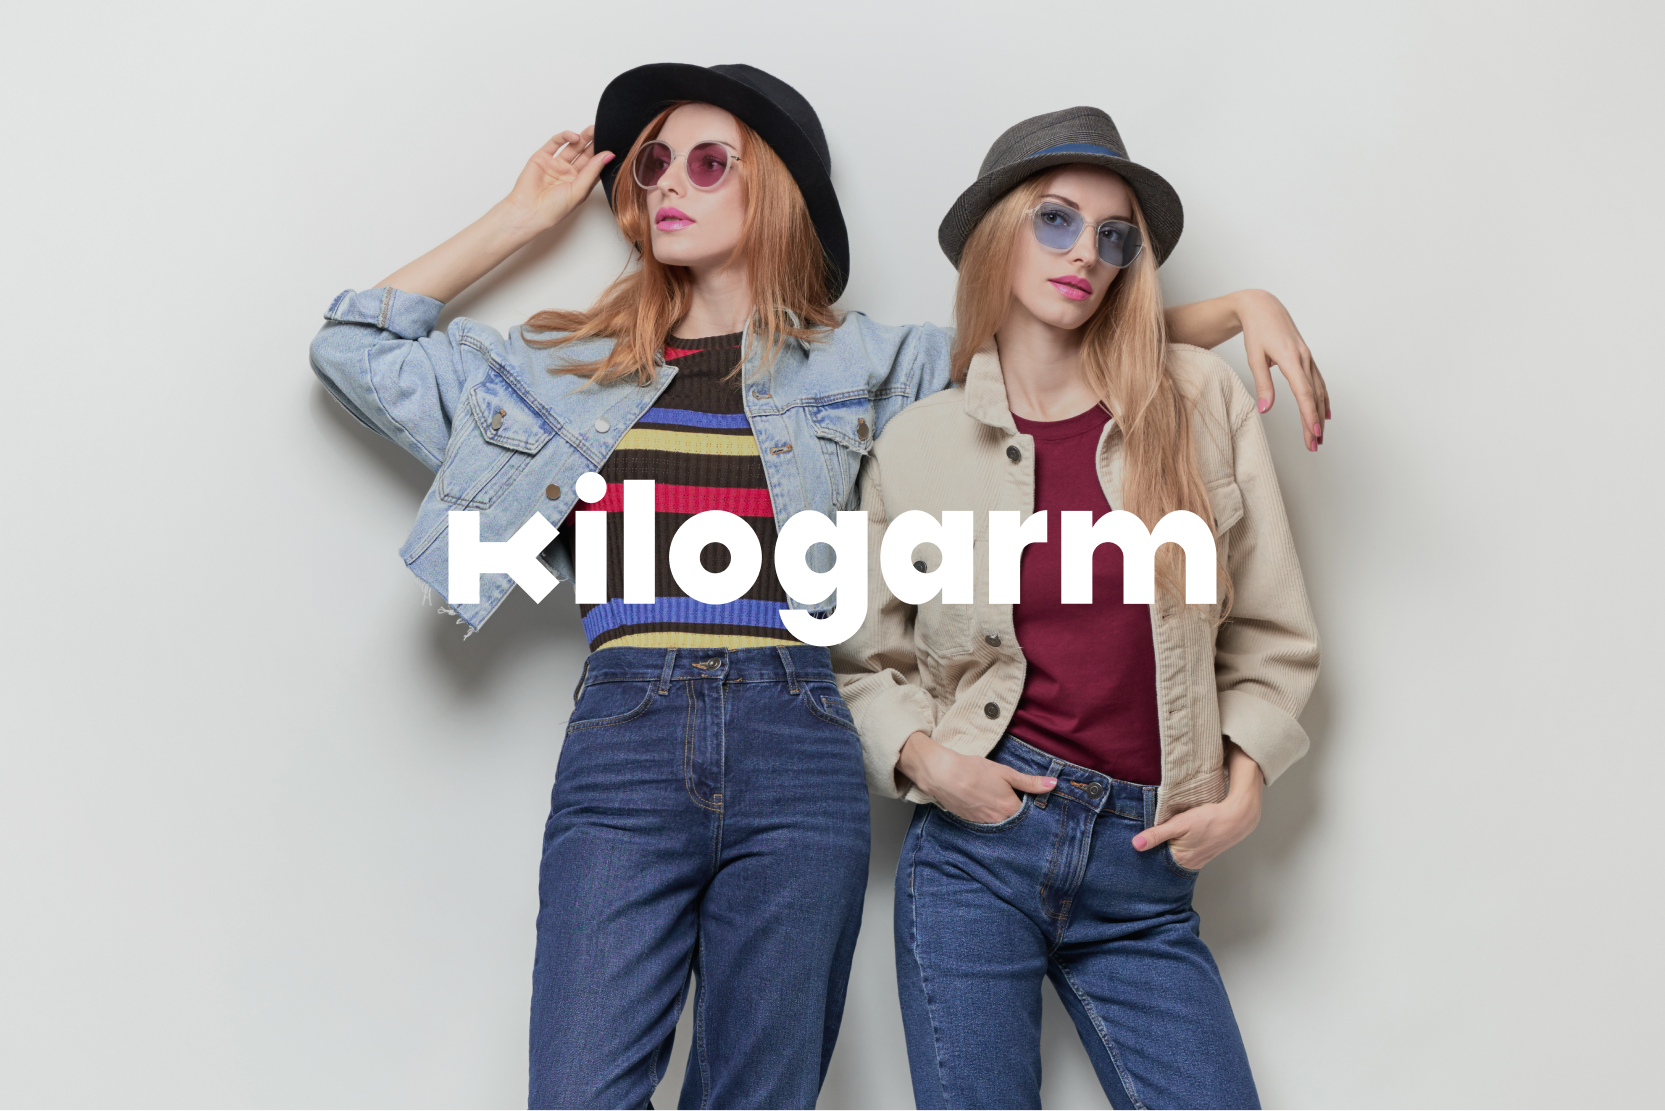 Kilogarm Logo on Image